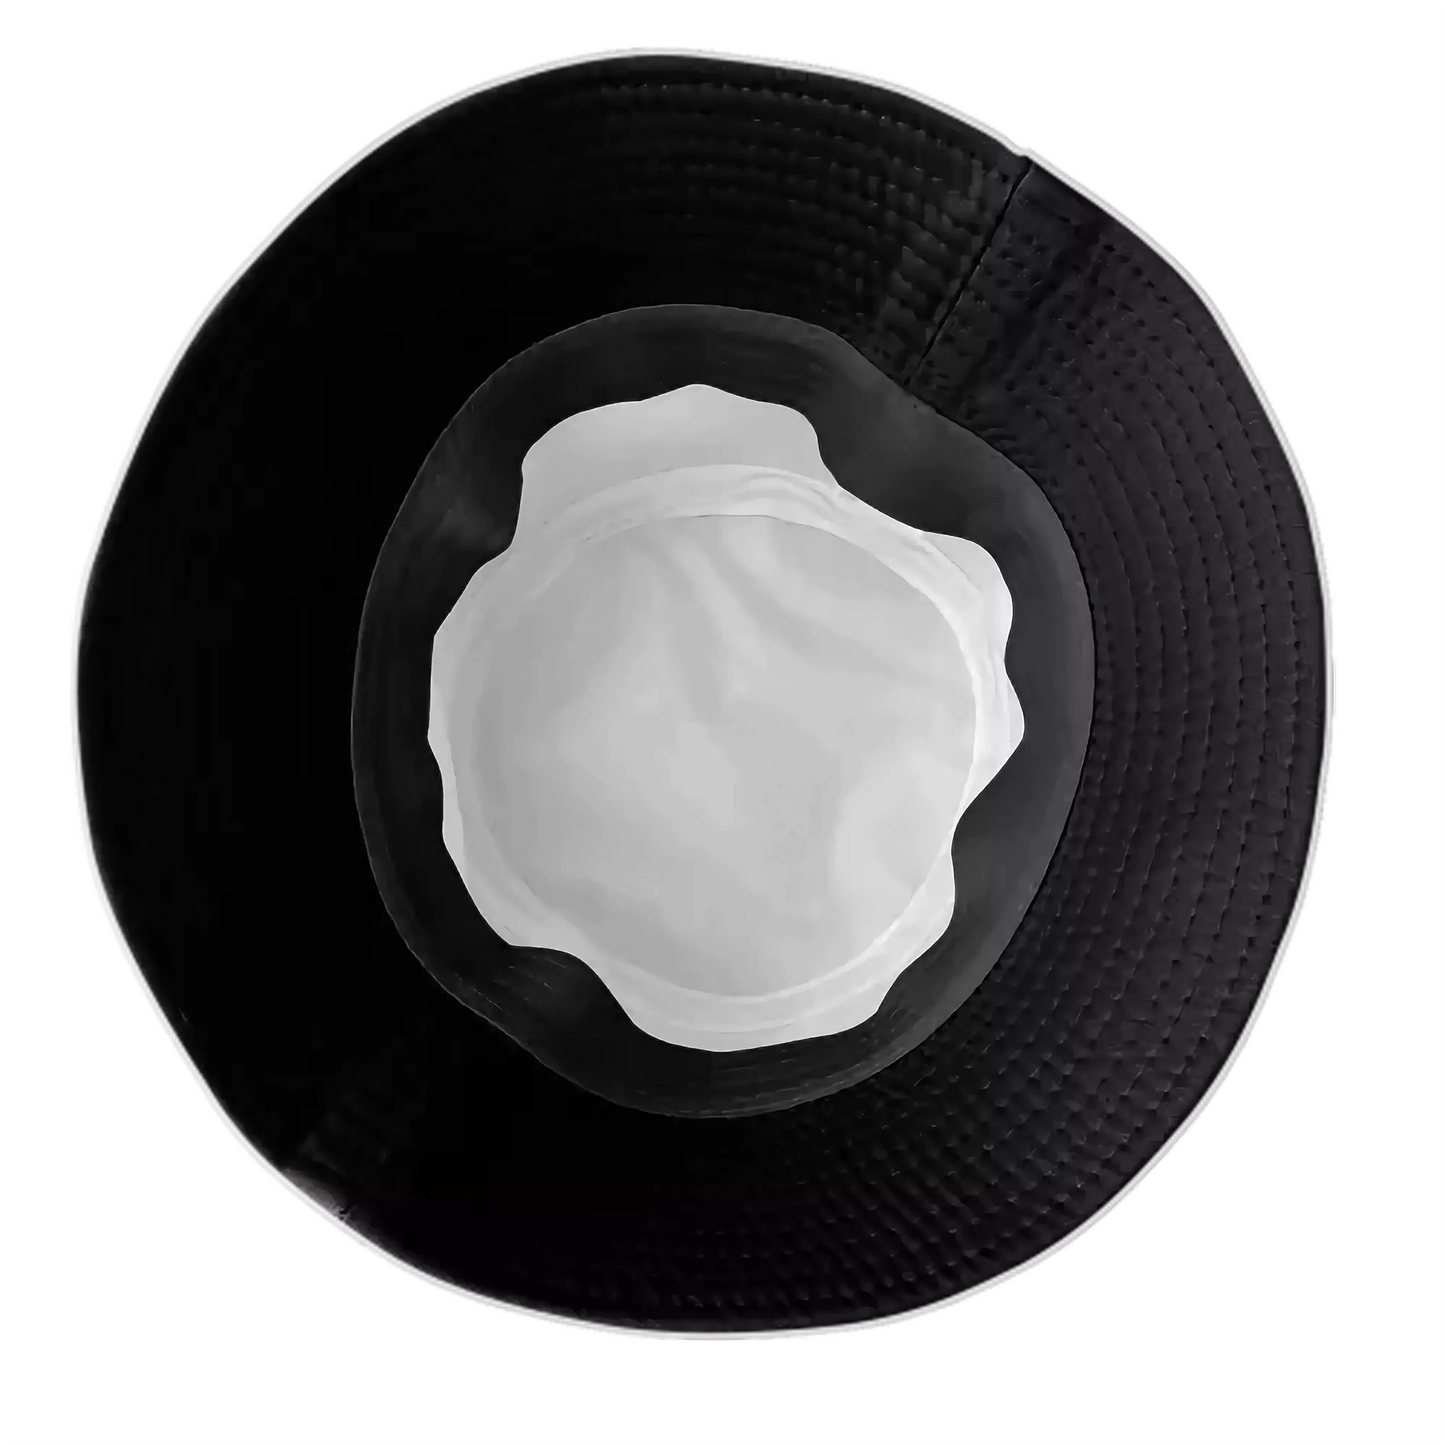 BTS logo Bucket Hat White